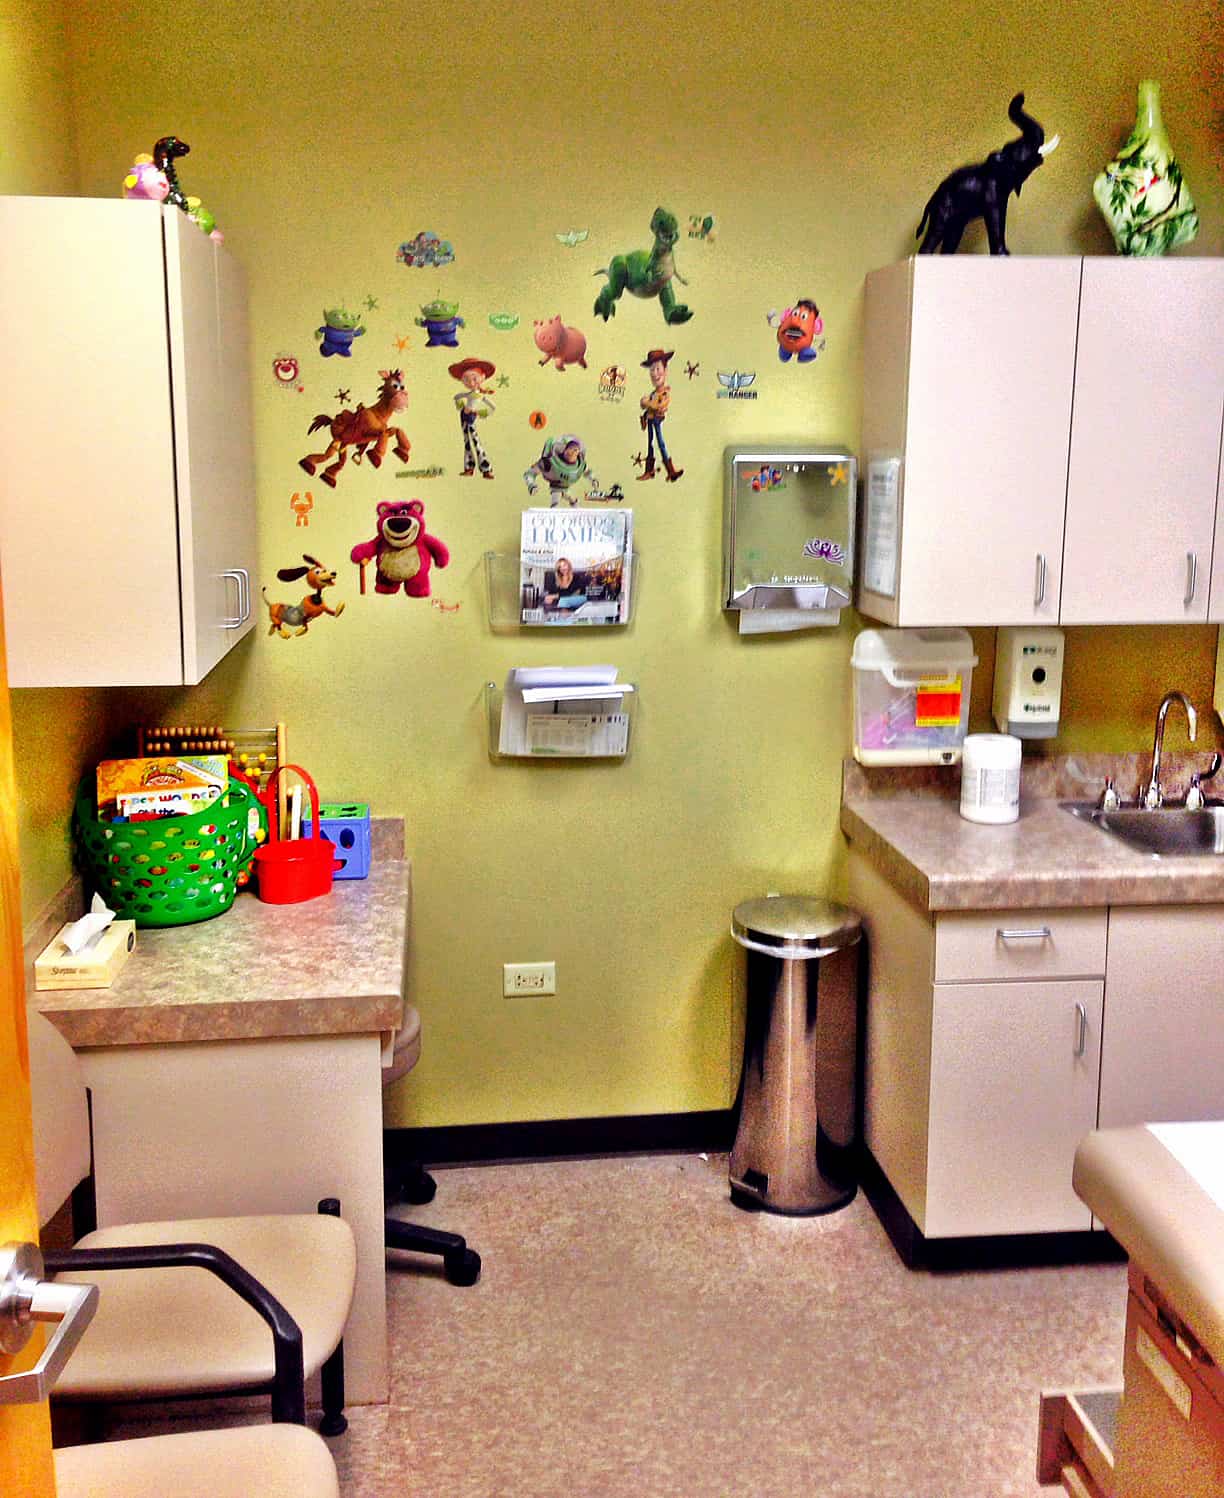 NextCare Arvada Colorado Patient Room - Urgent Care